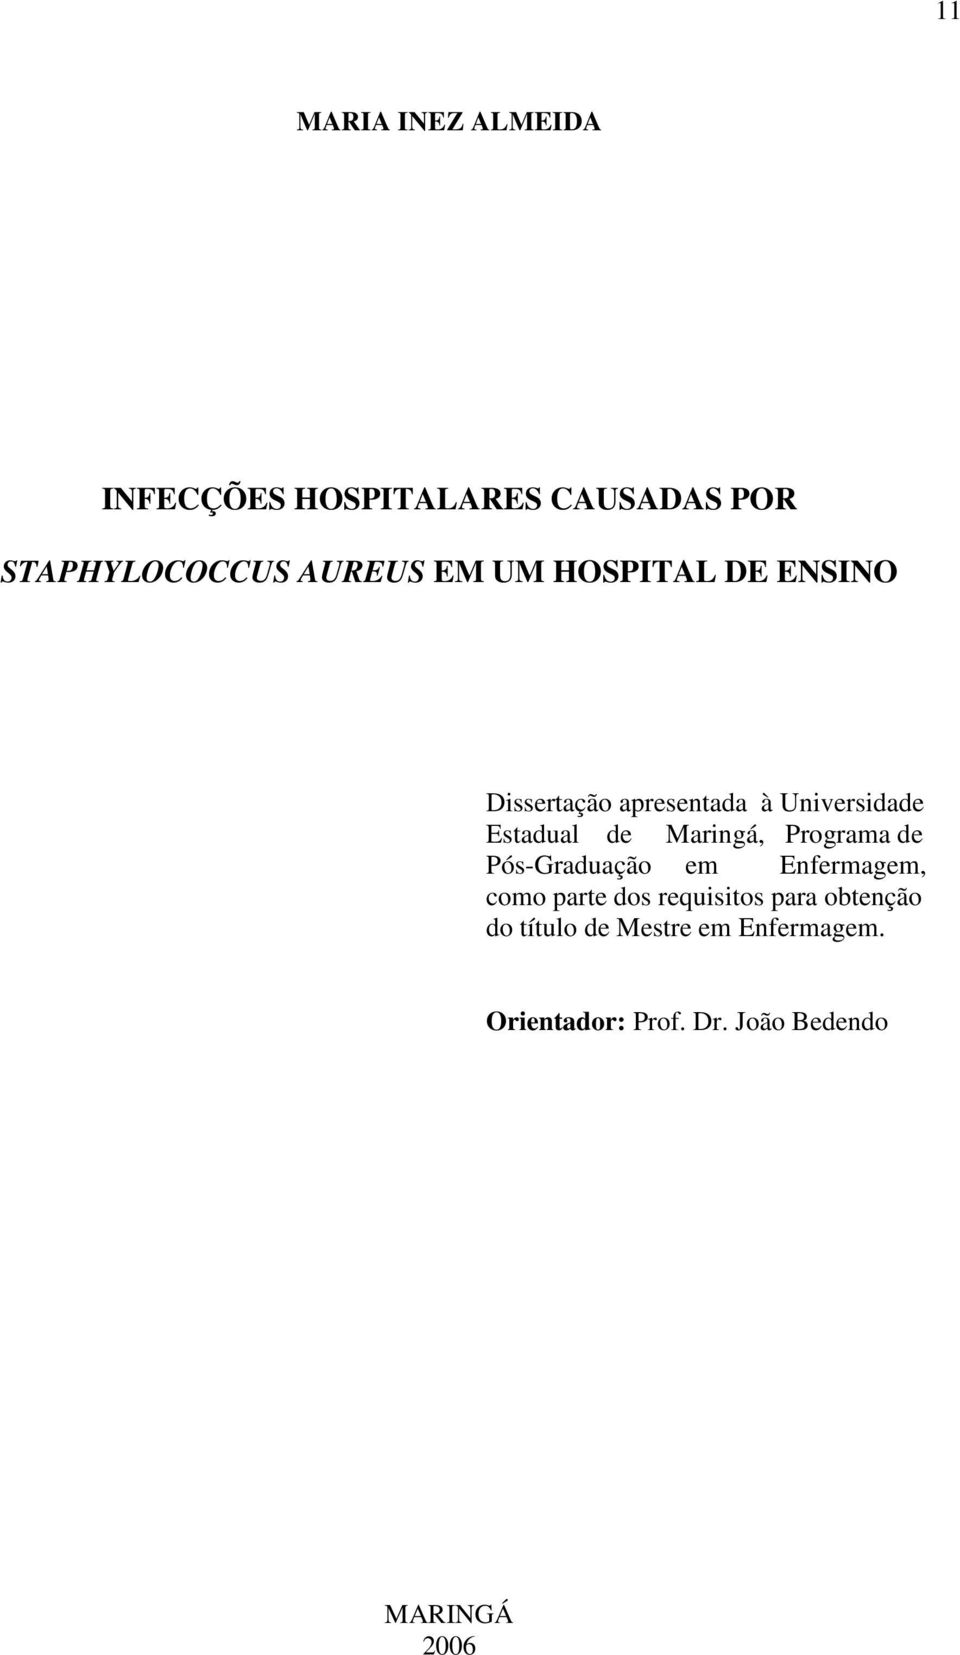 Maringá, Programa de Pós-Graduação em Enfermagem, como parte dos requisitos para